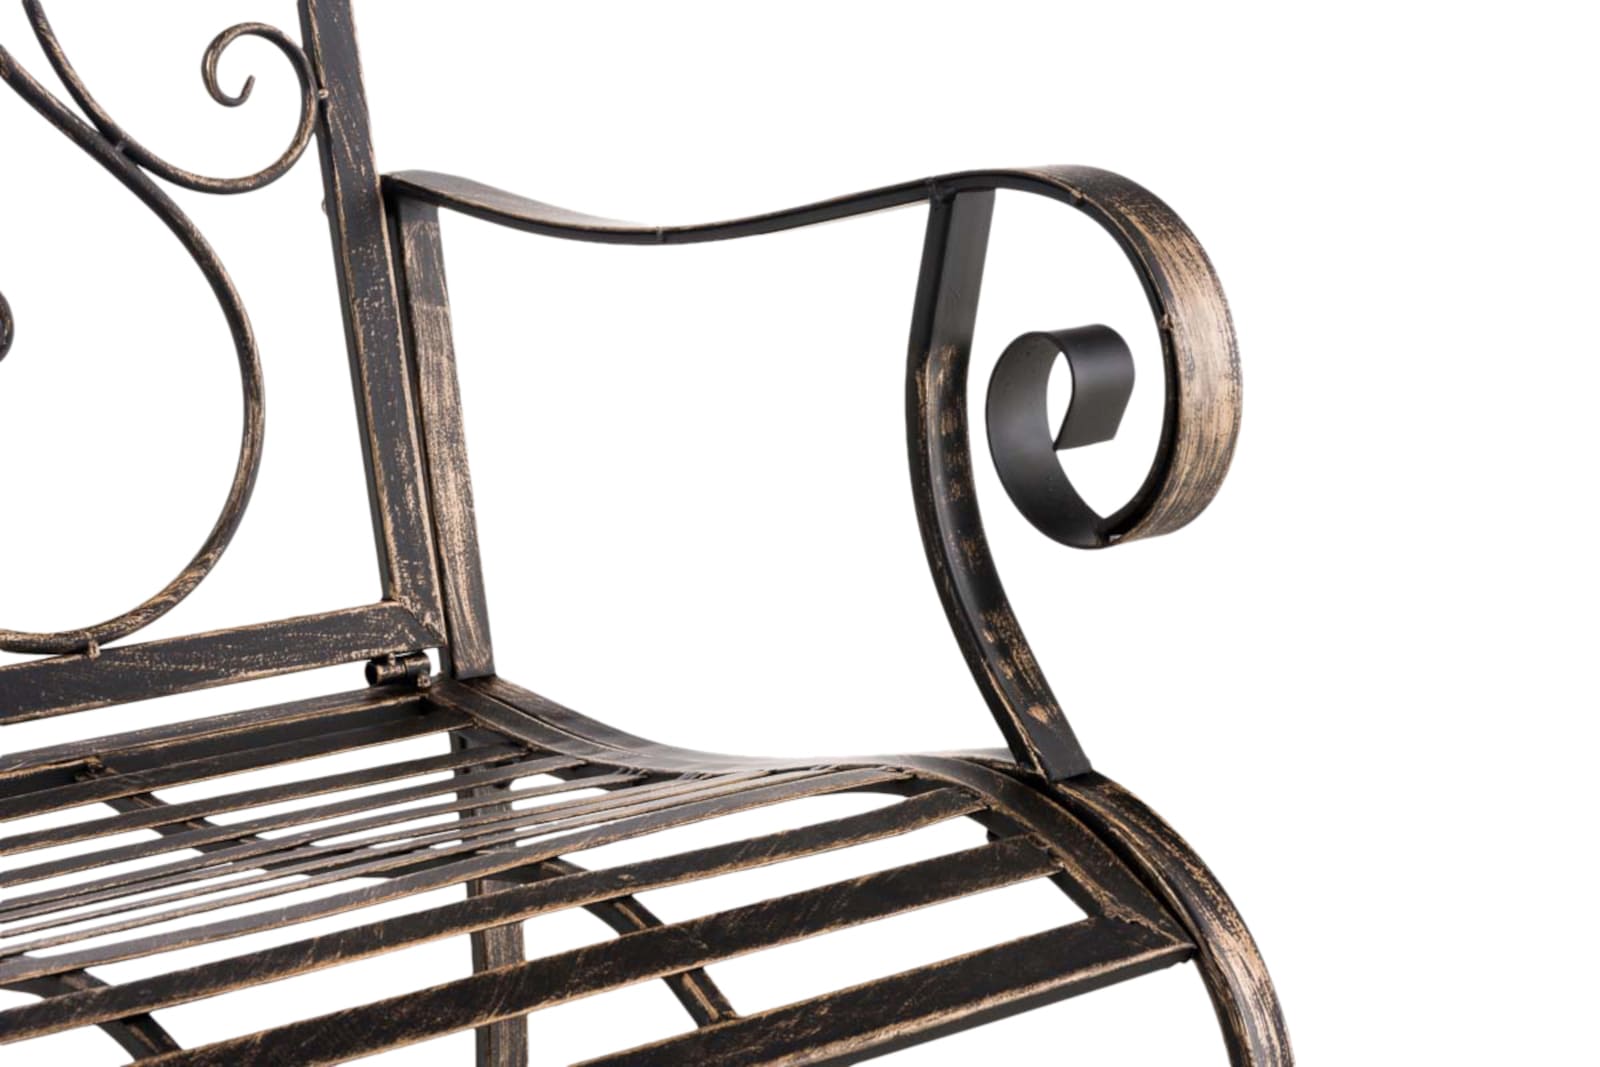 2er Set Gartenstühle Punjab mit Armlehnen bronze